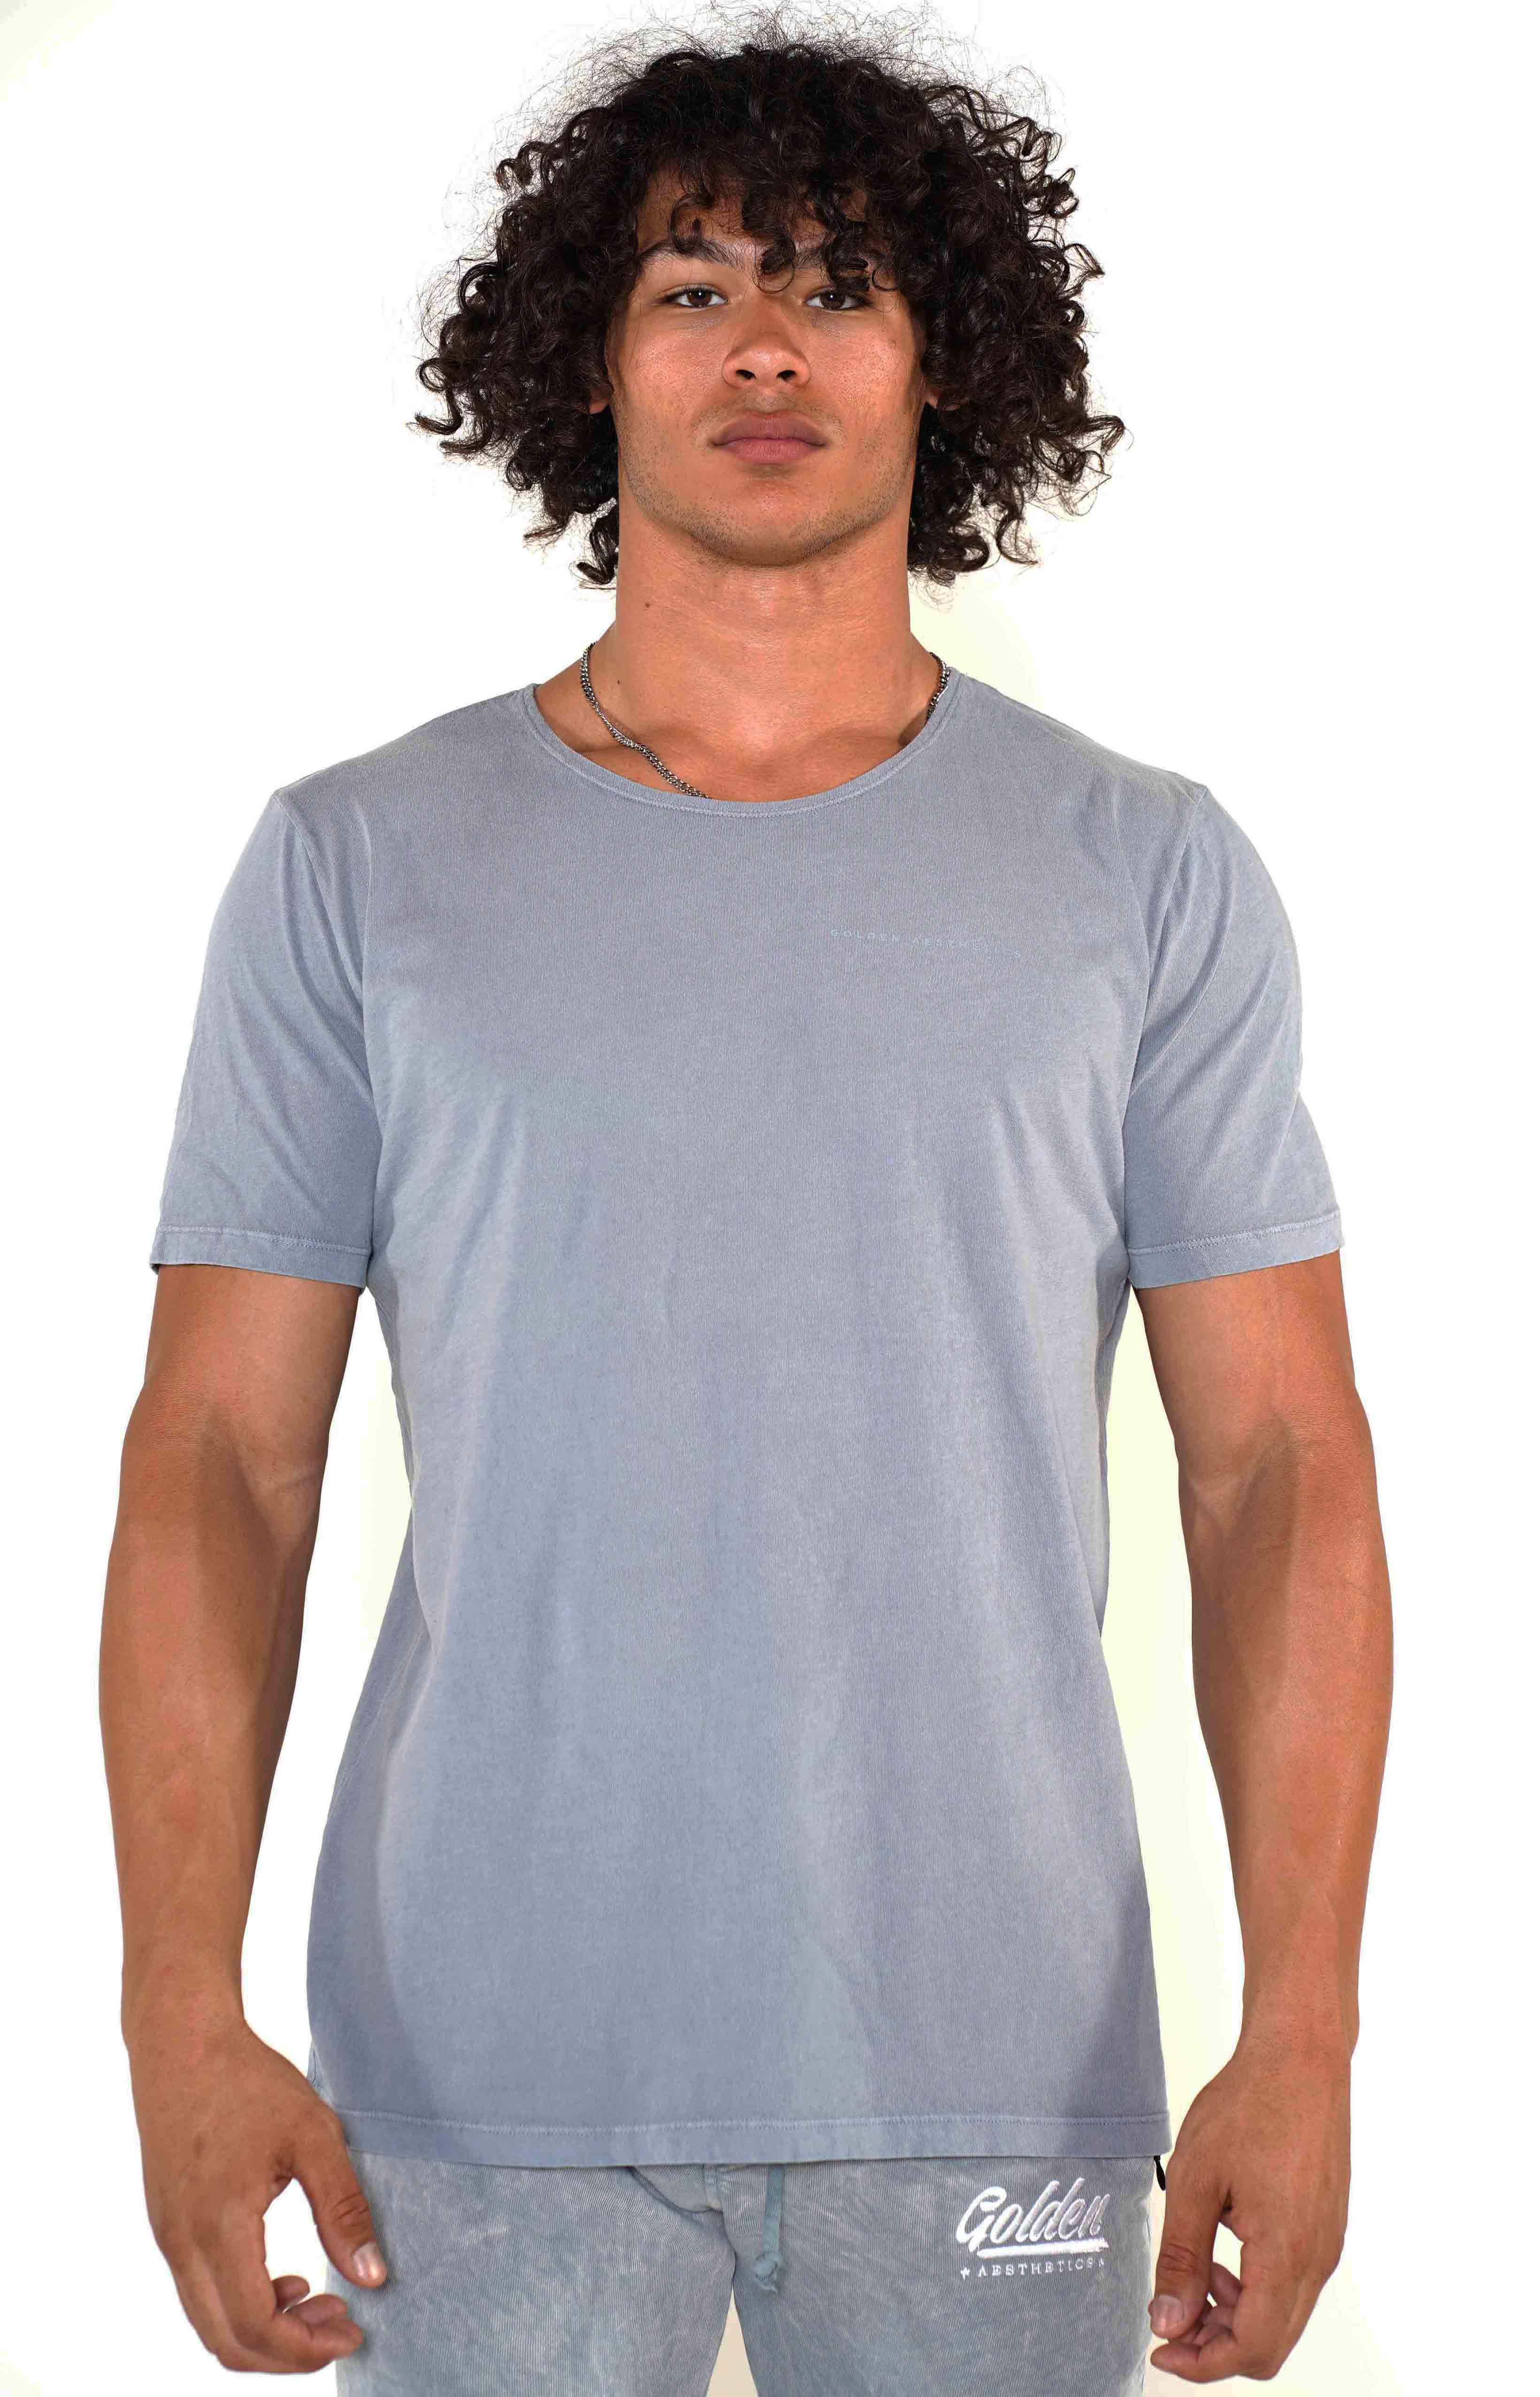 Men's Ocean Scoop Neck T-Shirt - Golden Aesthetics